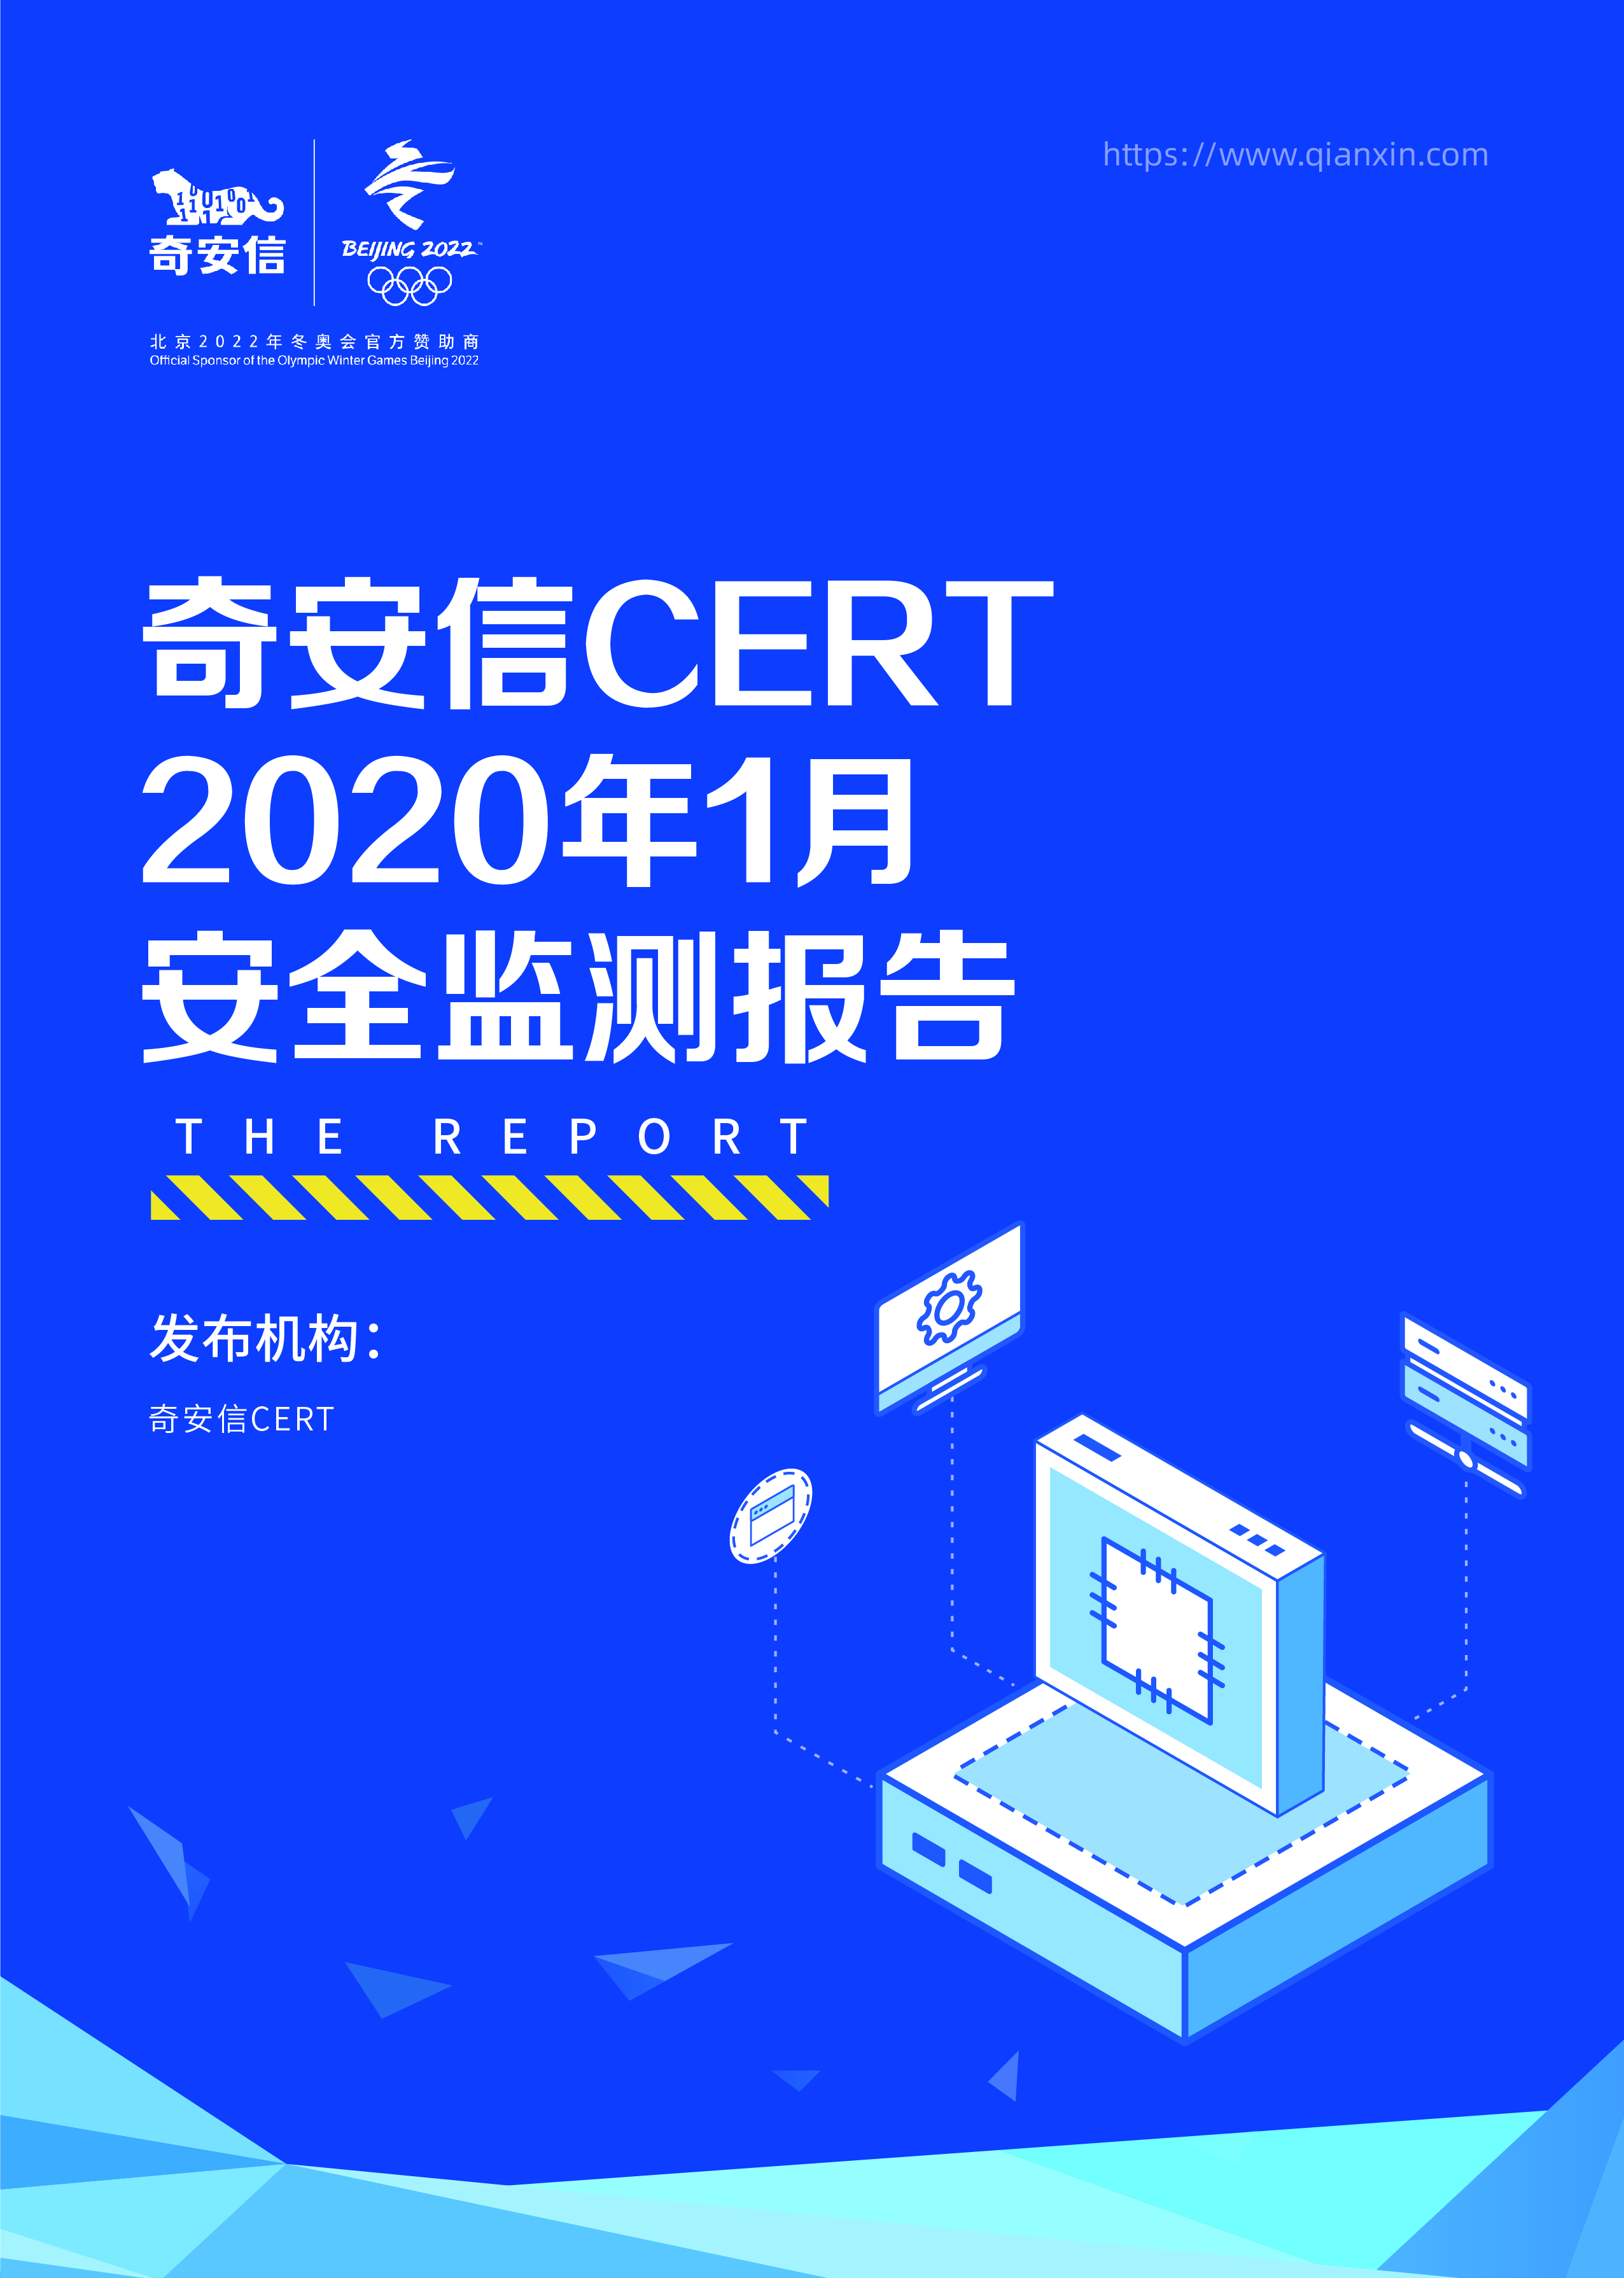 奇安信CERT 2020年1月安全监测报告